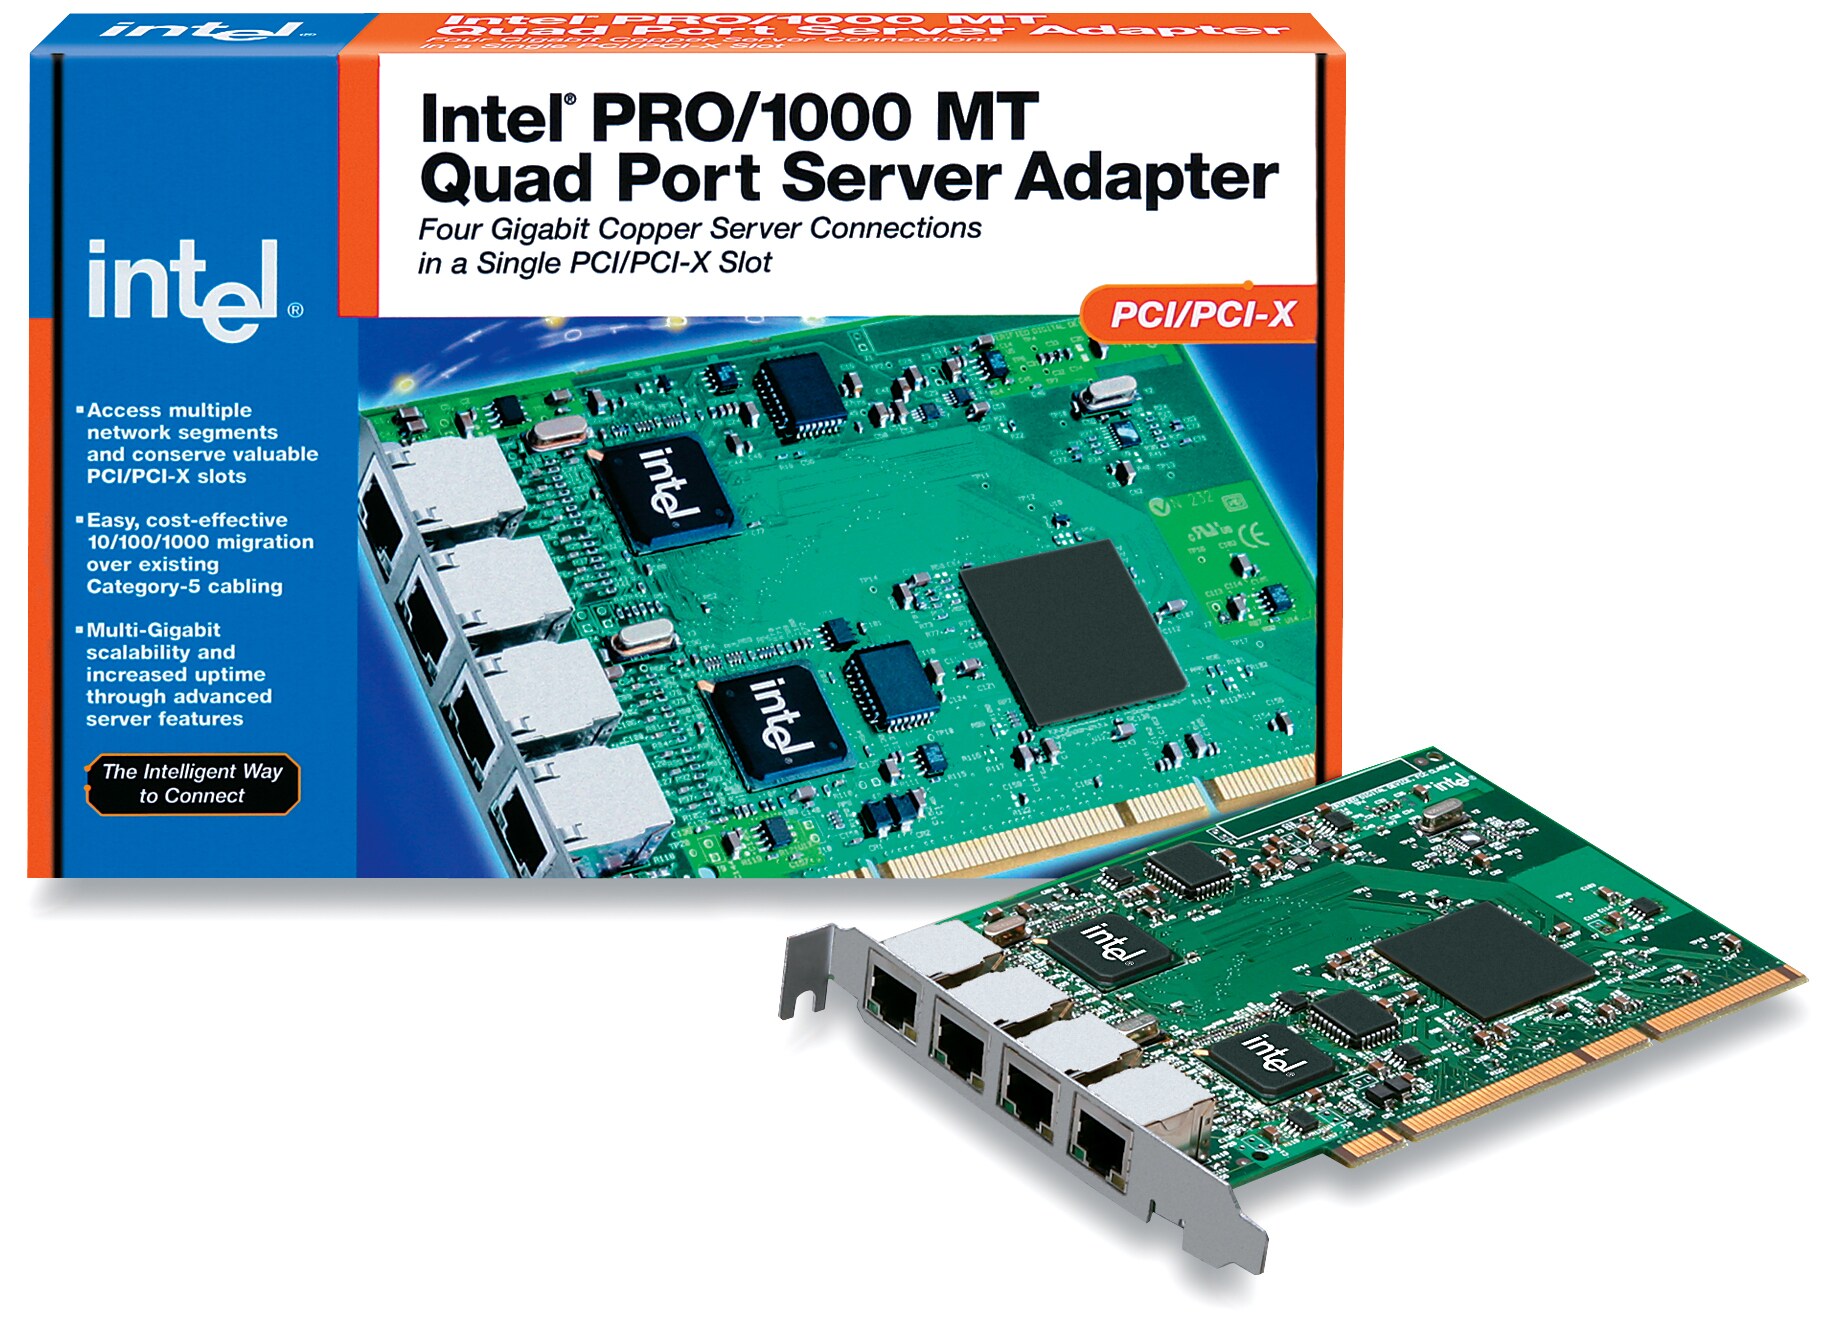 Intel PRO/1000 MT Quad Port Server Adapter - network adapter - 4 ports